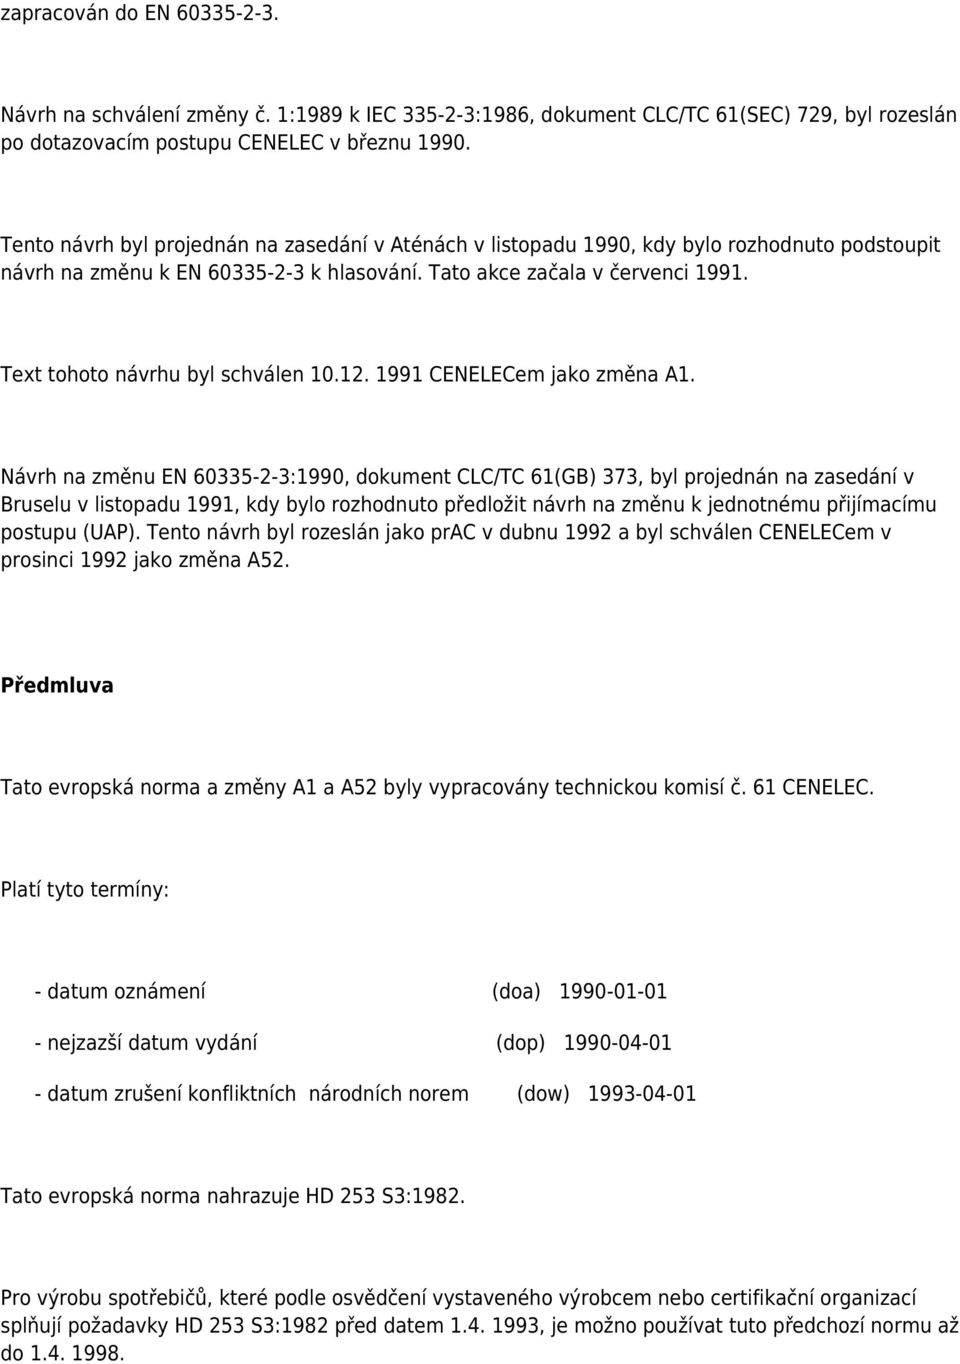 Text tohoto návrhu byl schválen 10.12. 1991 CENELECem jako změna A1.